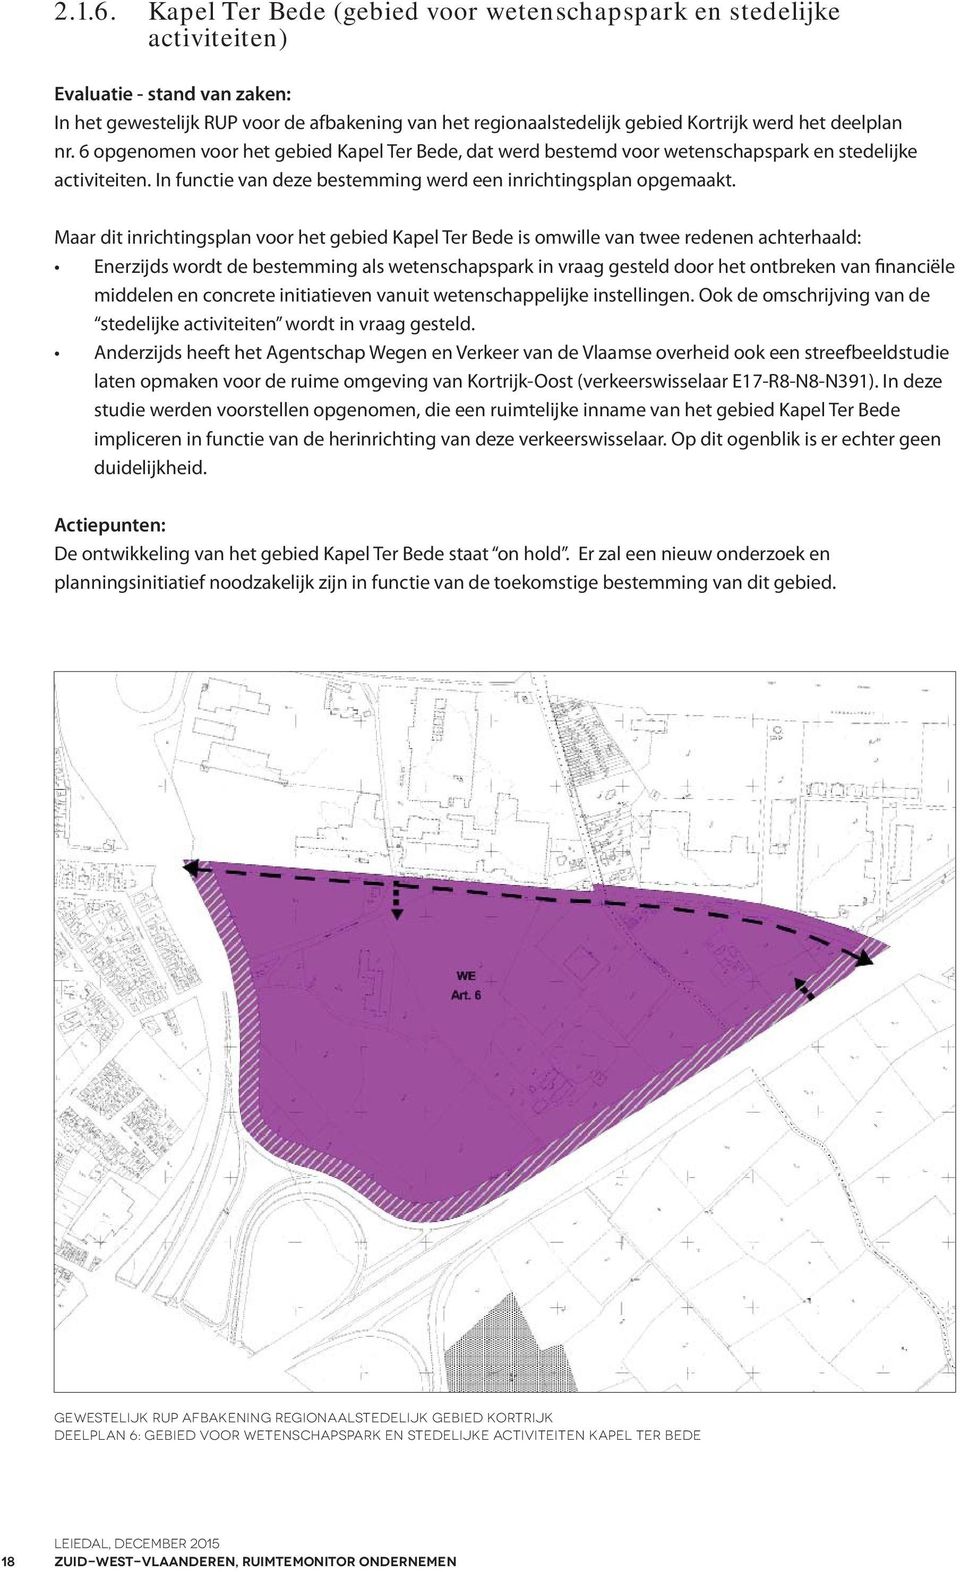 deelplan nr. 6 opgenomen voor het gebied Kapel Ter Bede, dat werd bestemd voor wetenschapspark en stedelijke activiteiten. In functie van deze bestemming werd een inrichtingsplan opgemaakt.